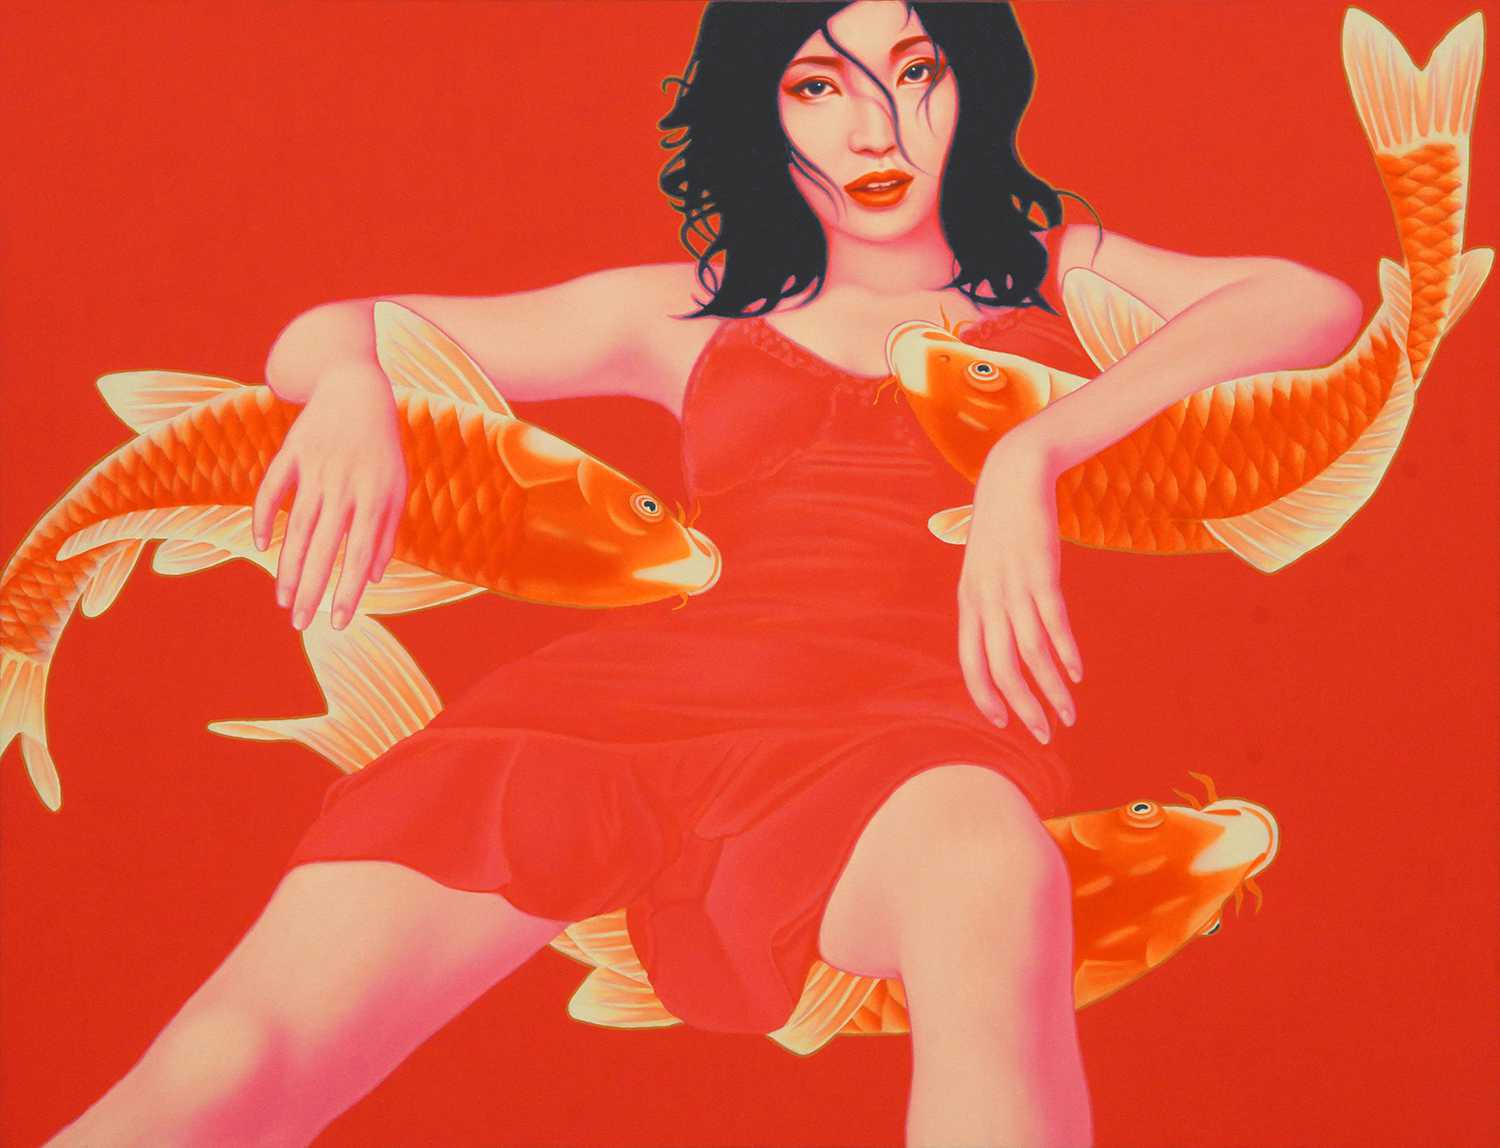 鱼·女孩 Fish Girl 100x130cm 布面油画 oil on canvas